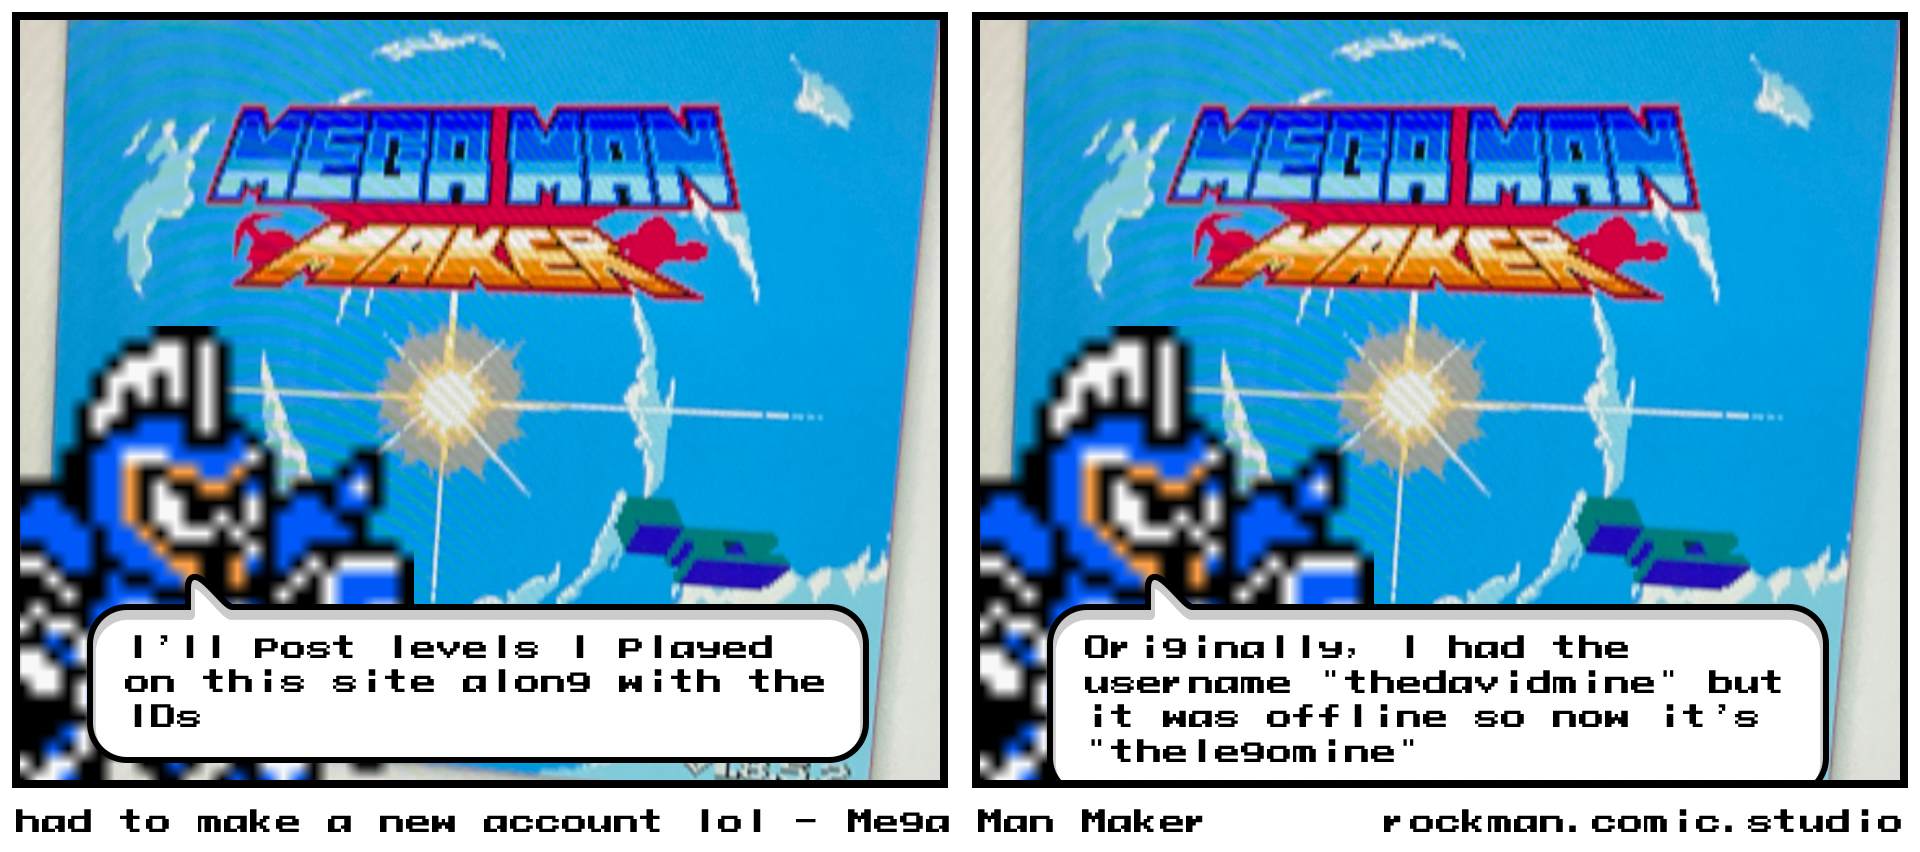 had to make a new account lol - Mega Man Maker